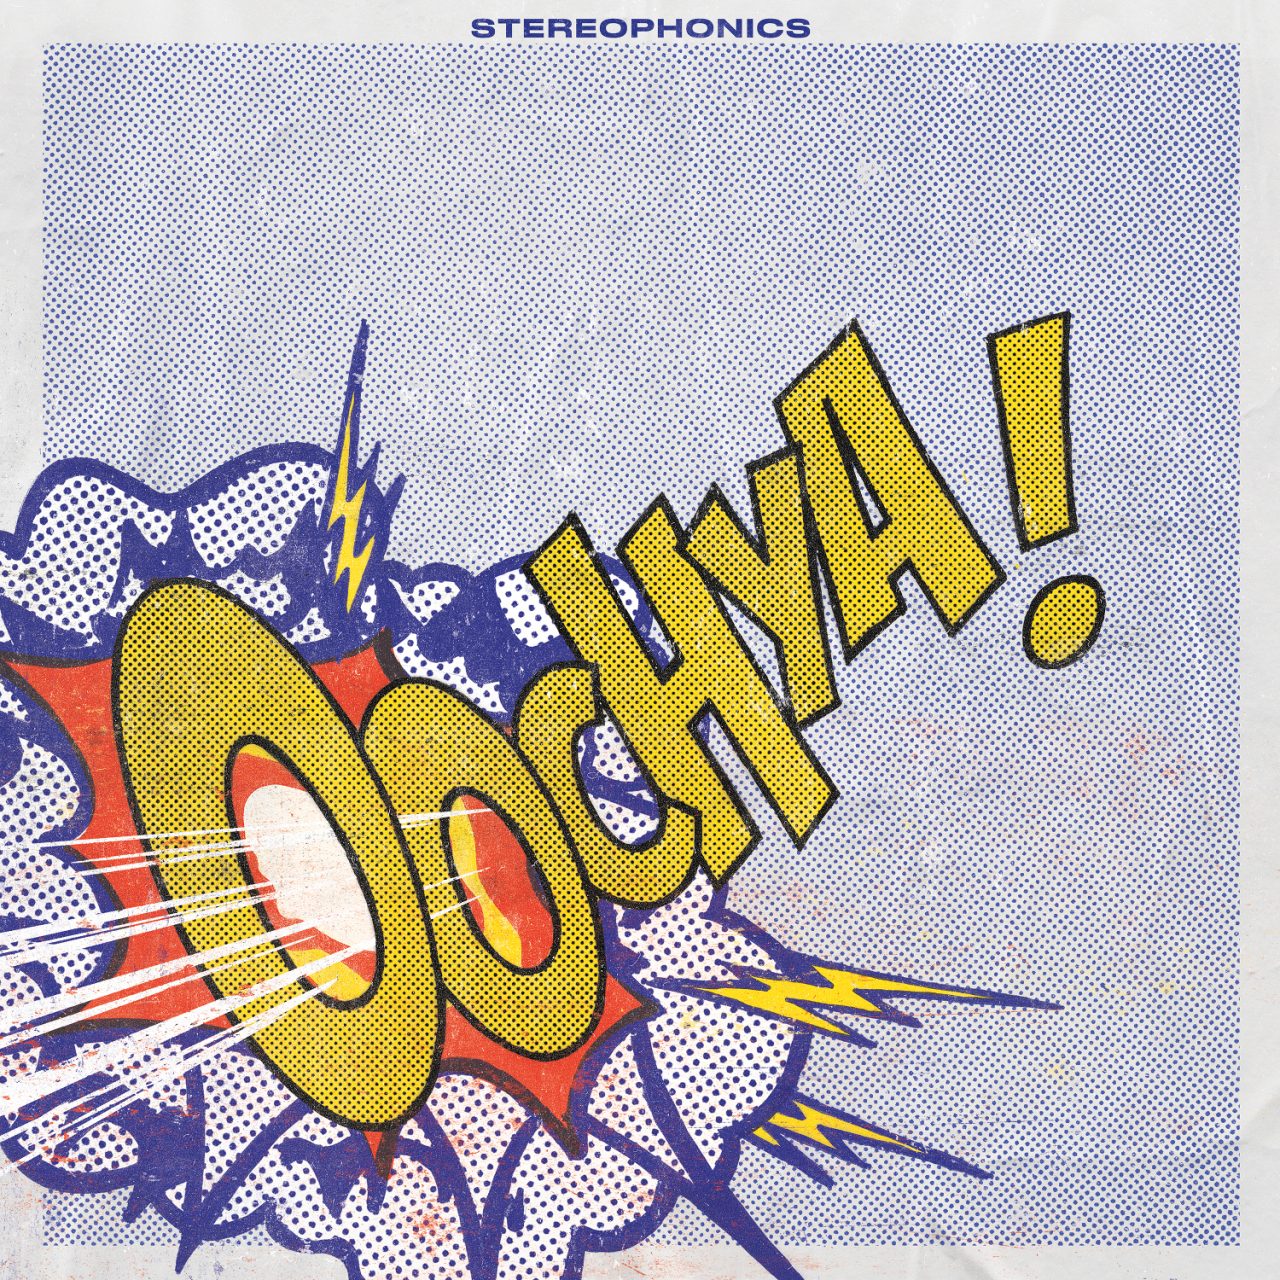 Das Albumcover "Oochya" von den Stereophonics zeigt den Albumtitel im Cartoon-Stil.